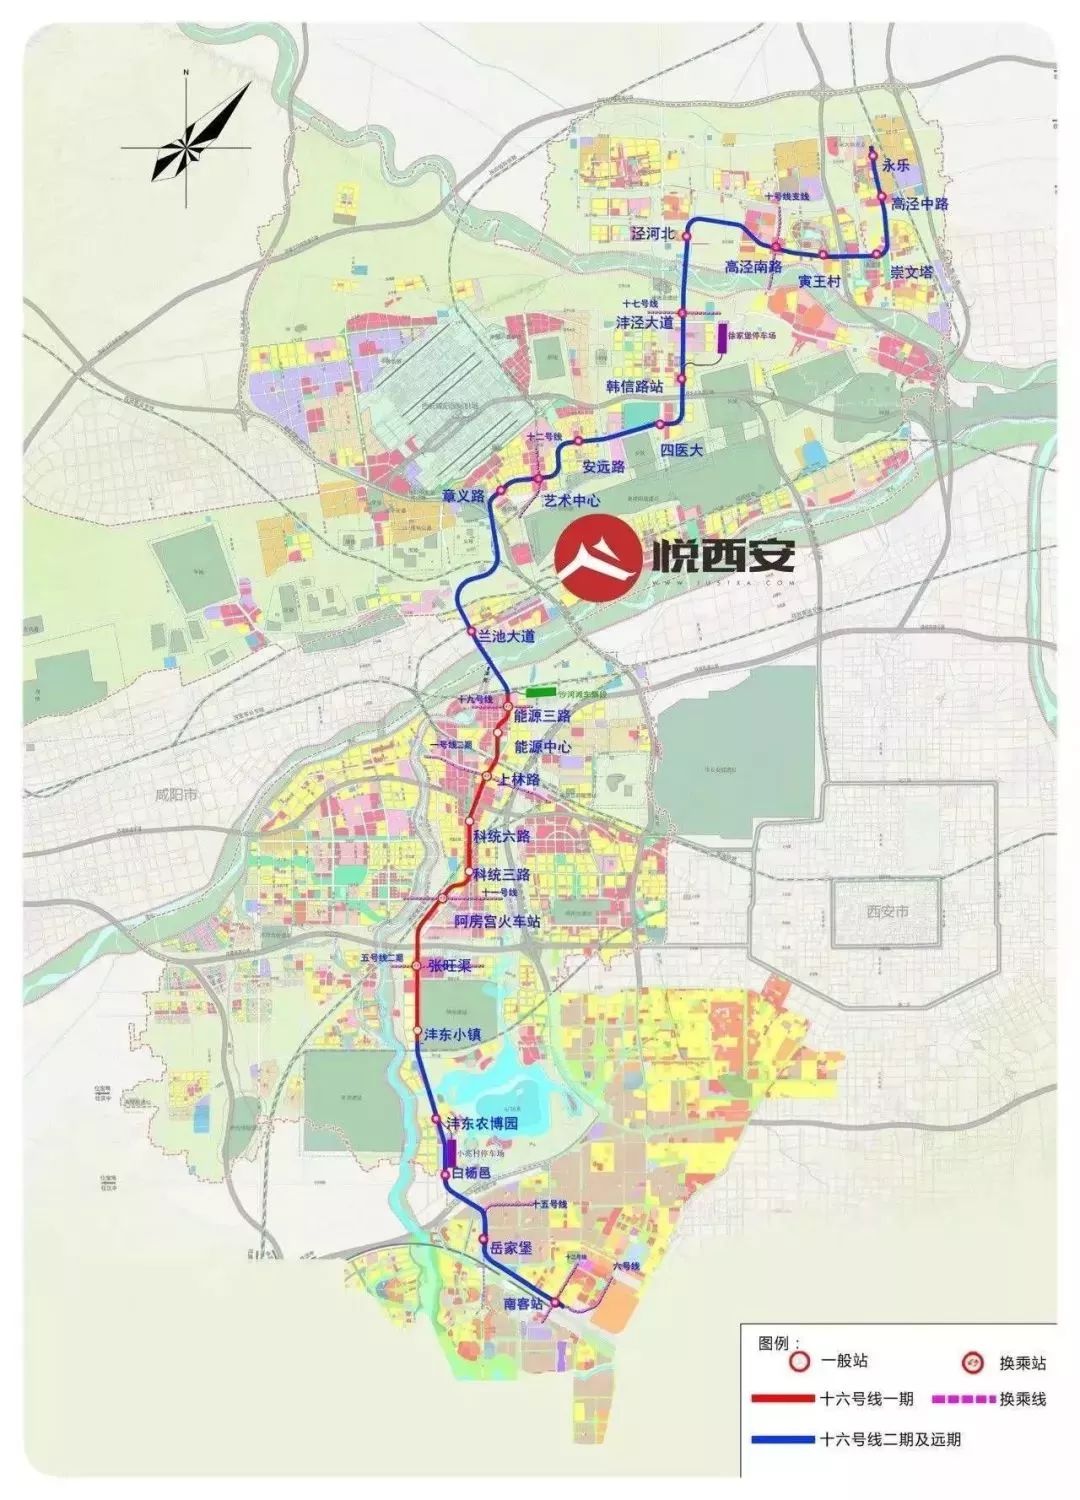 最全信息!2019—2024年,西安要规划建设这些地铁线路!